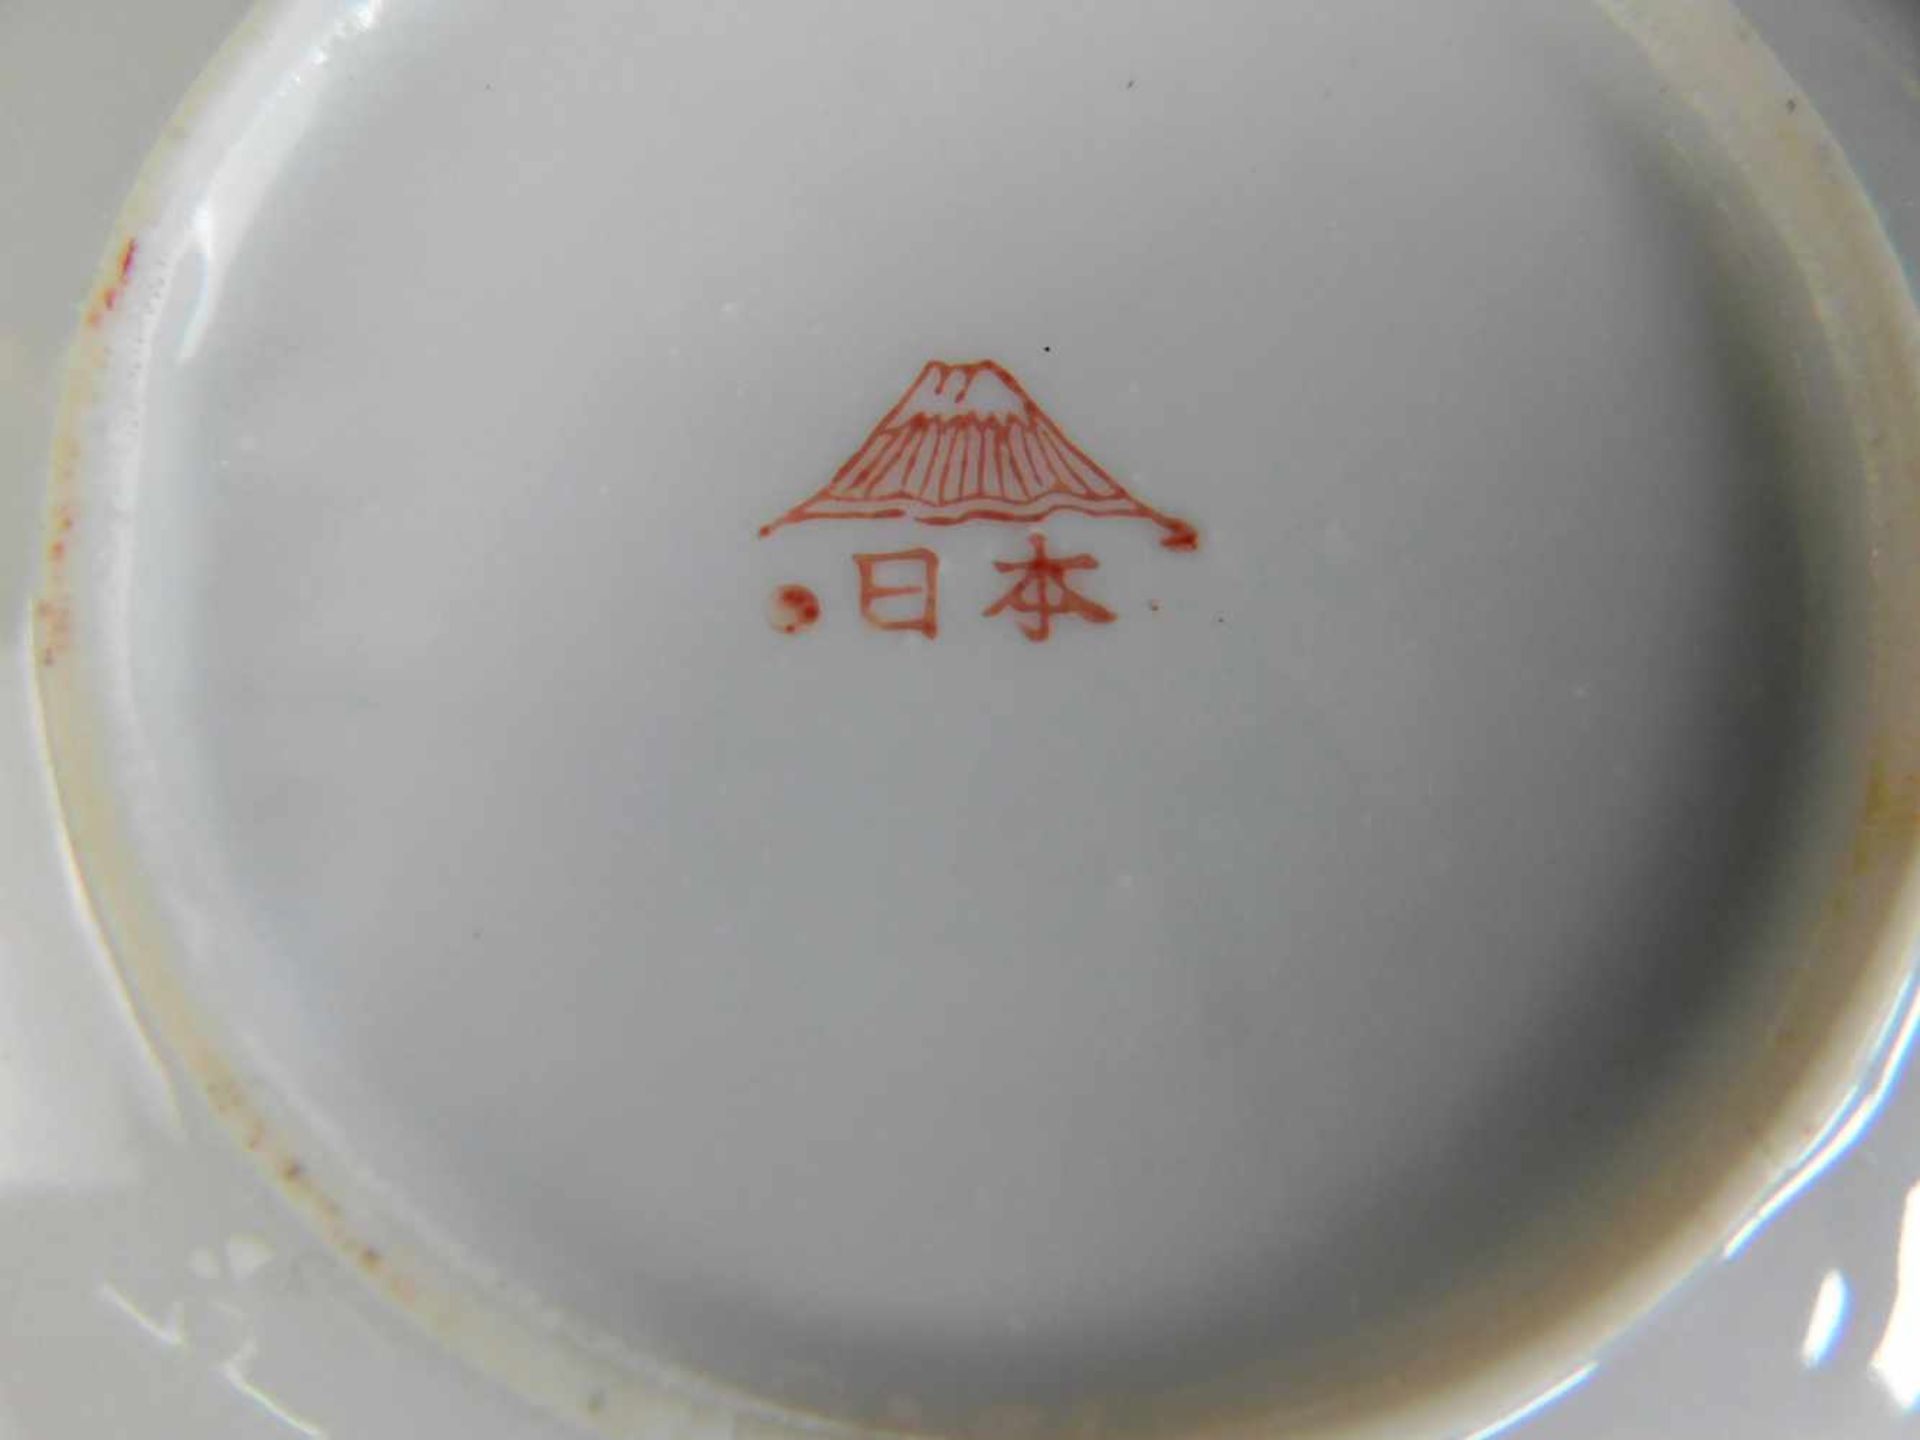 15-teiliges Teeservice, Mount Fuji Japan, Lithophanie im Boden der Tassen, Darstellung Kaiserin6 - Bild 5 aus 5